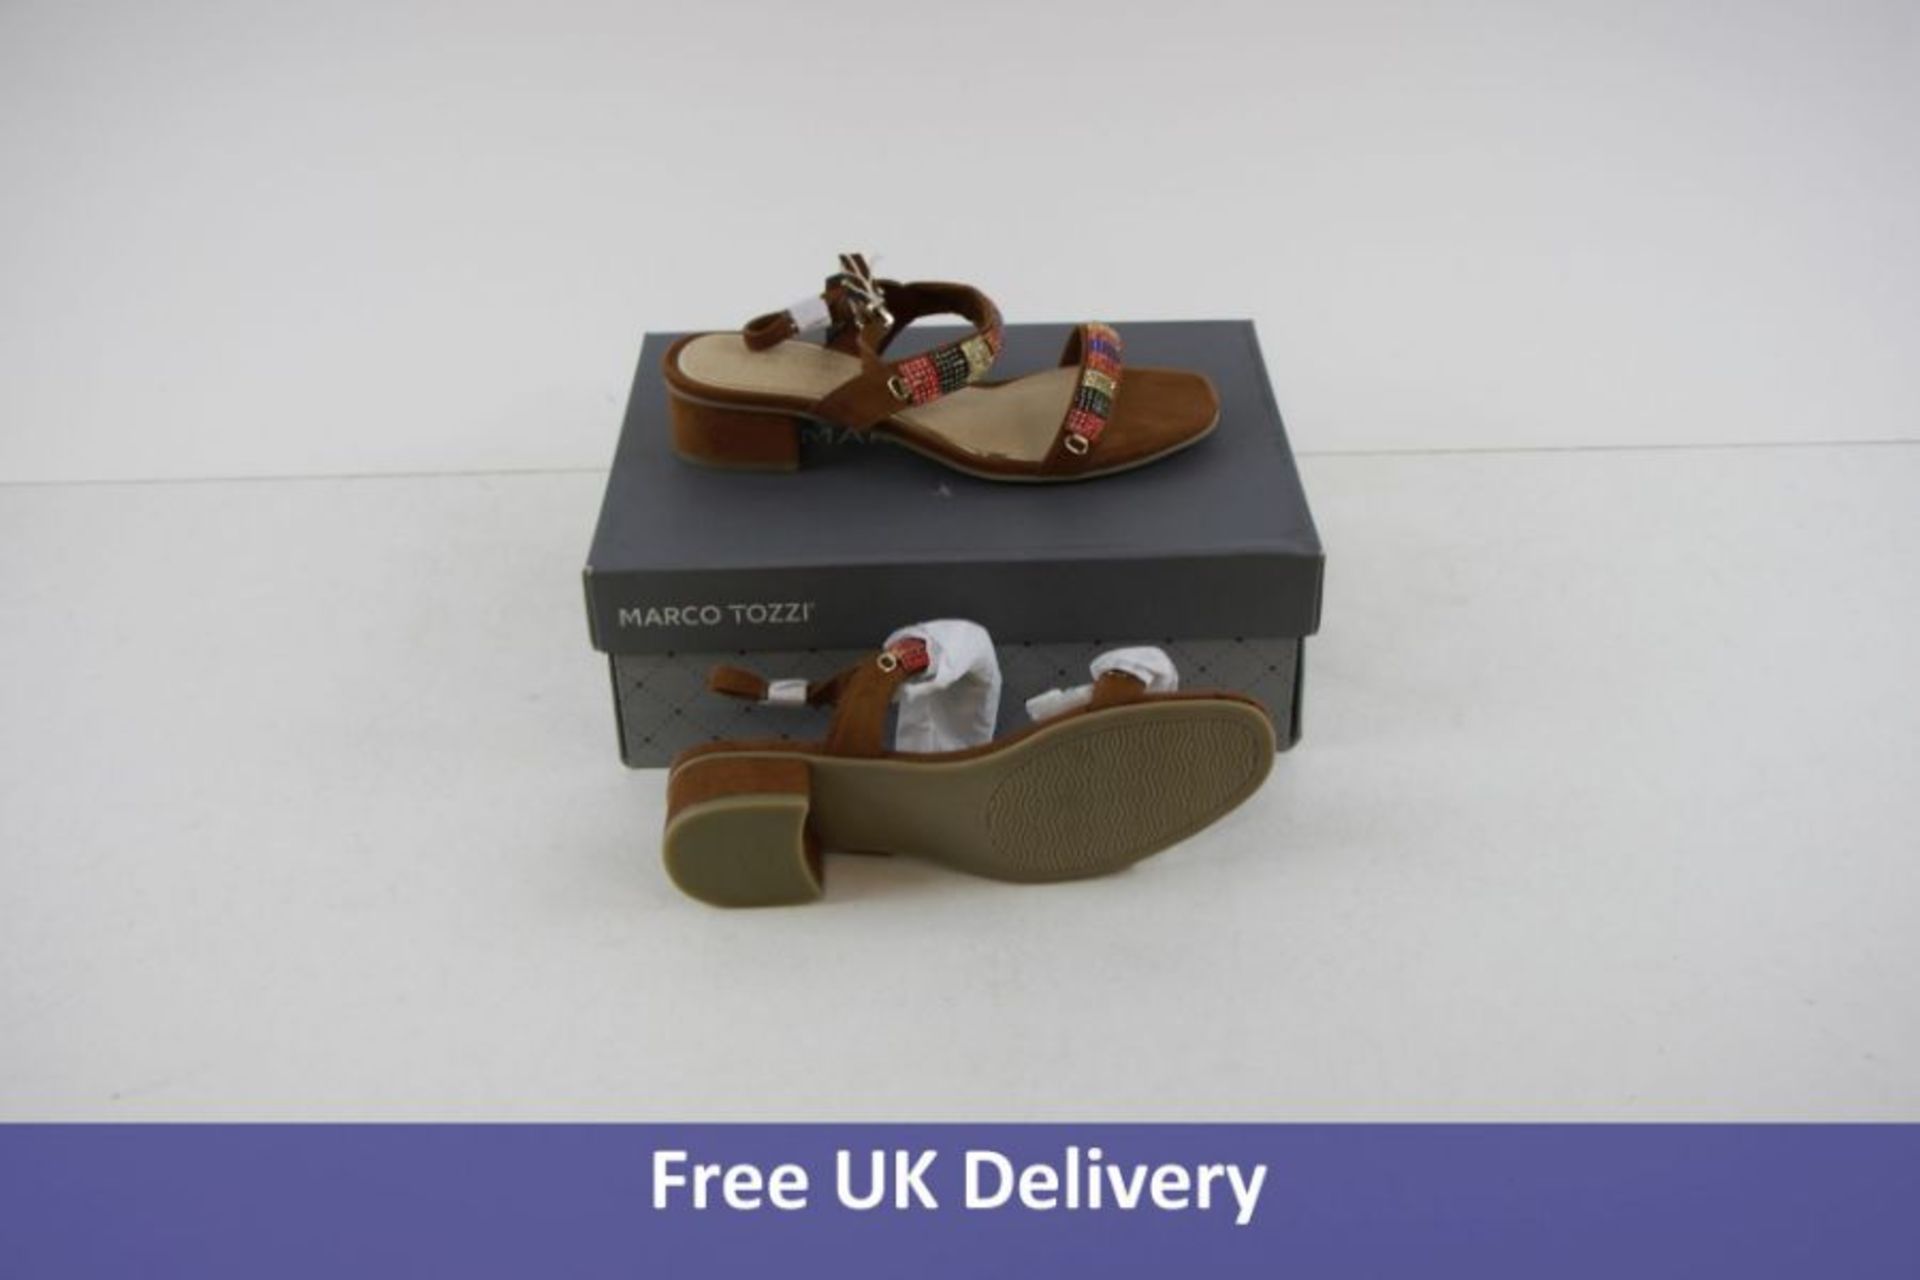 Marco tozzi Women's Heeled Sandals, Cognac, UK 5